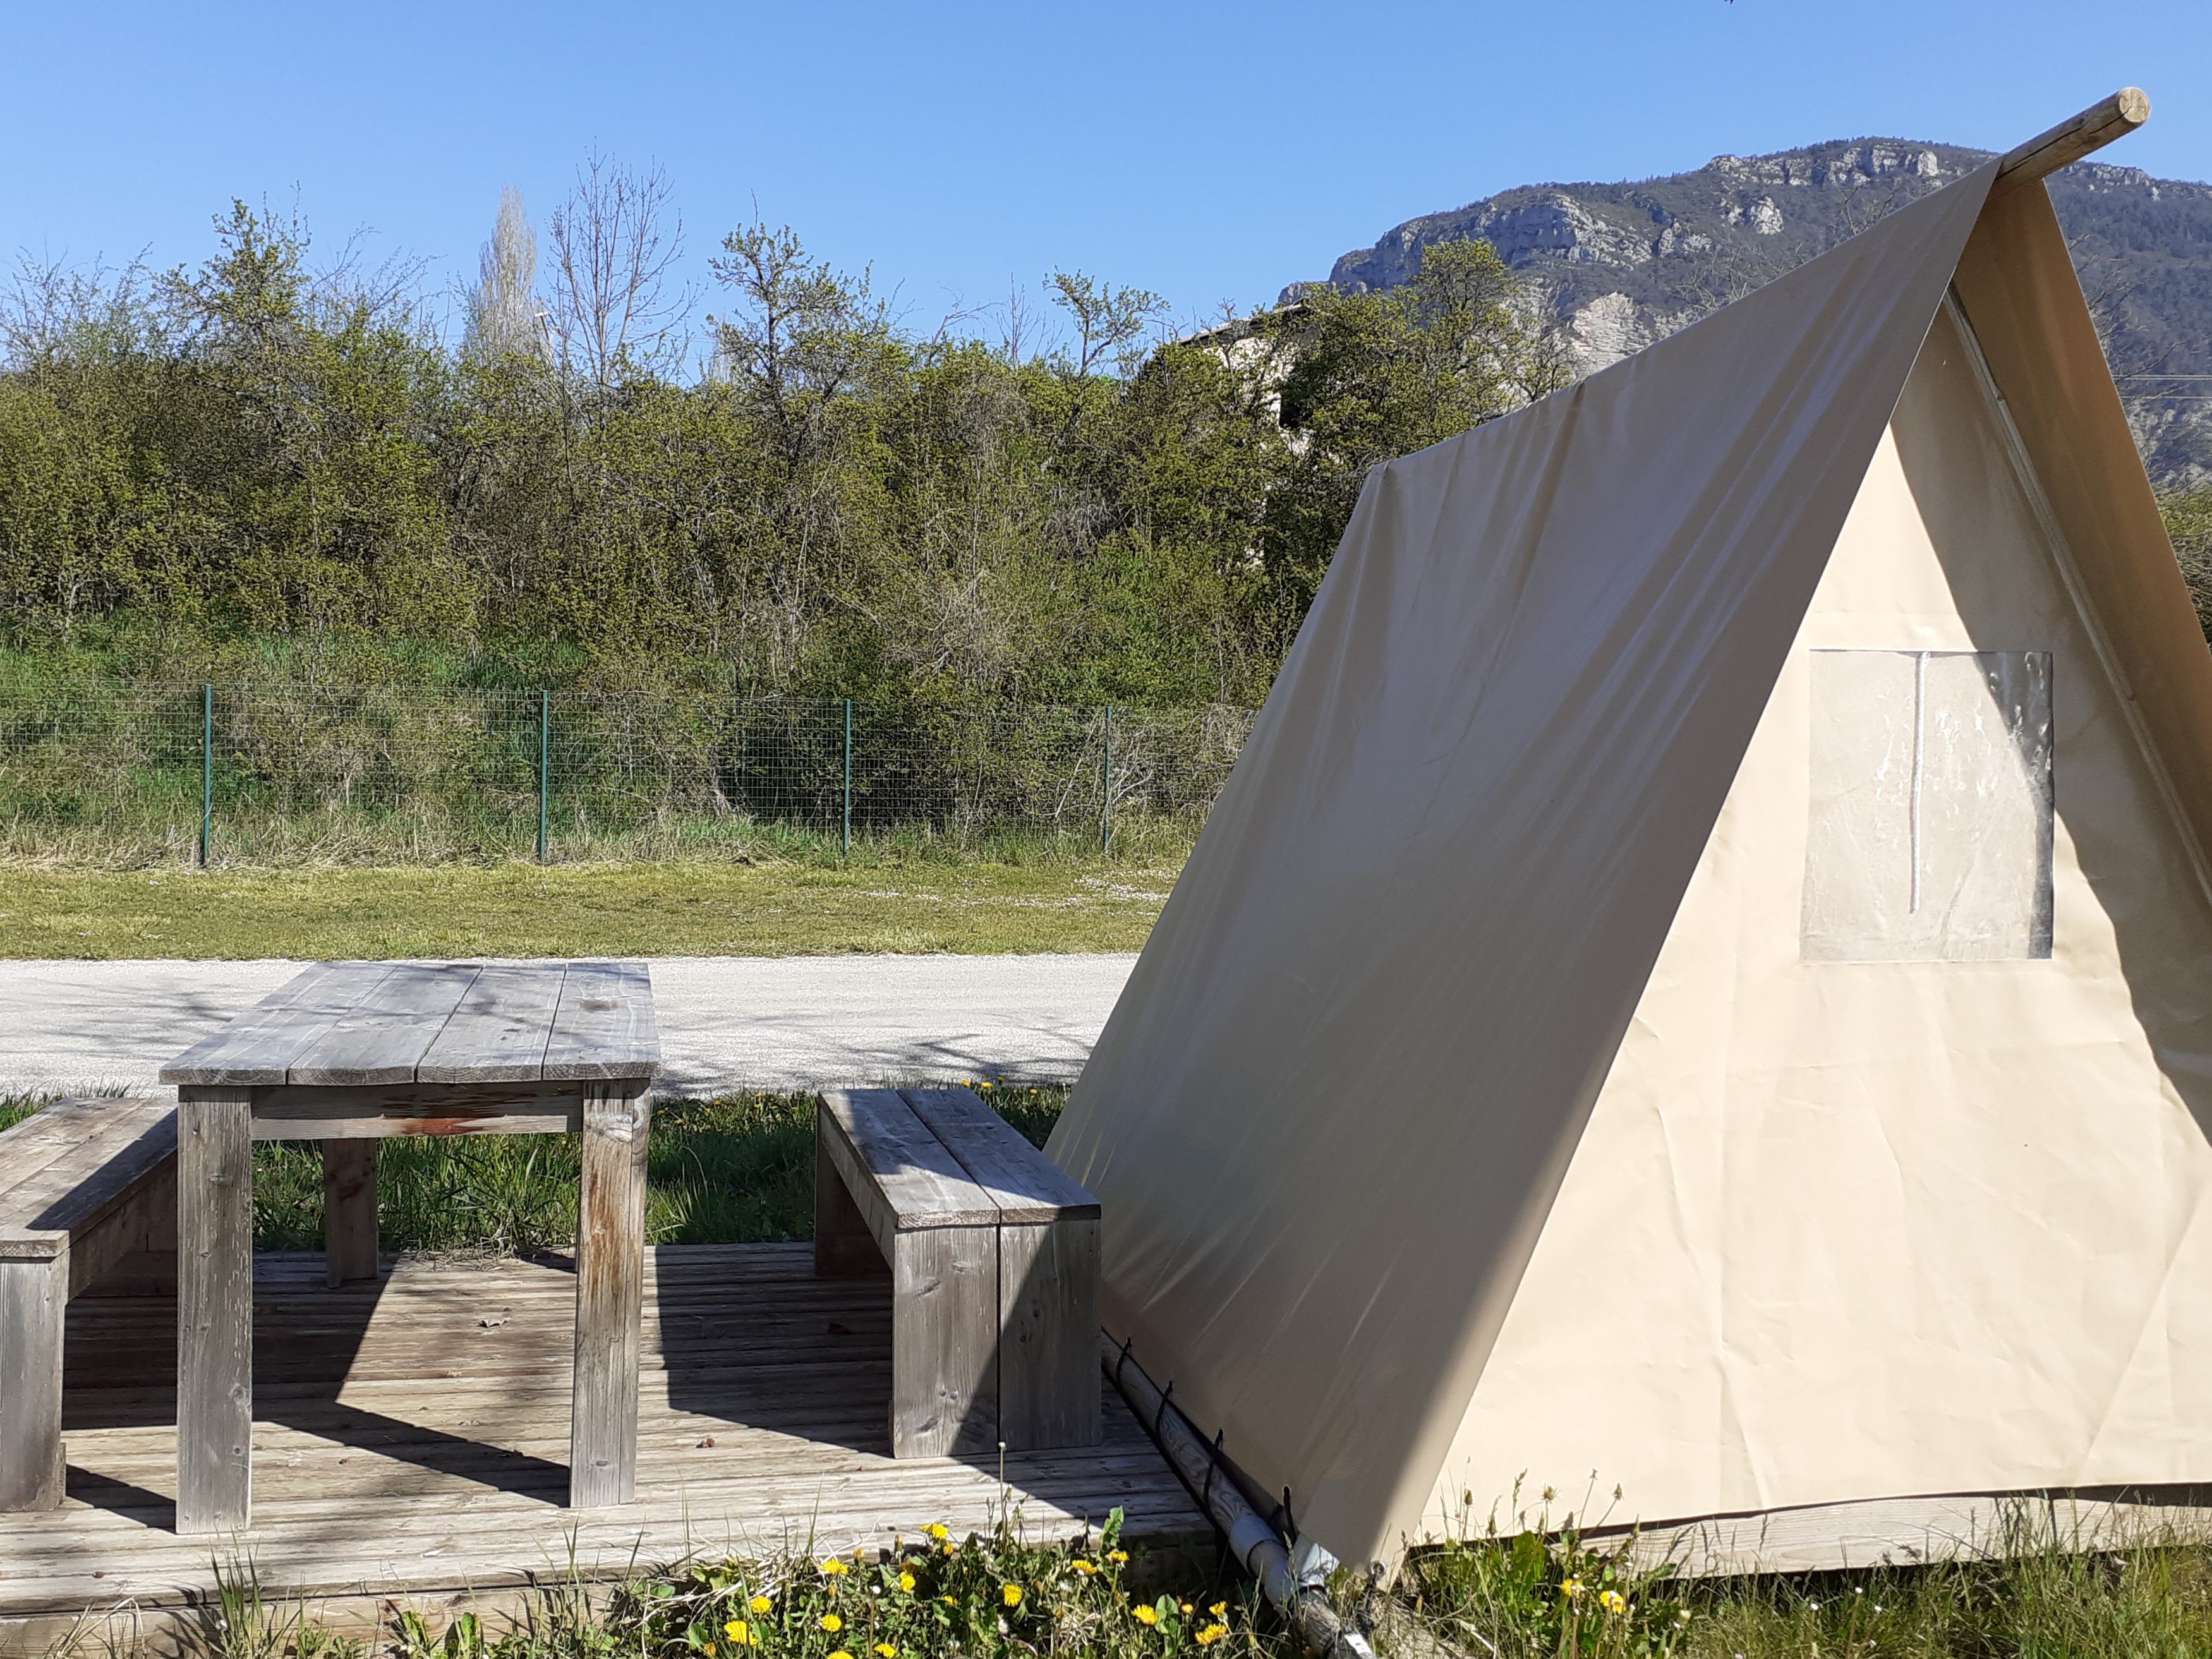 Huuraccommodatie - Tente Scoute 6M² - Zonder Privé Sanitair - Camping Koawa Le Lac Bleu